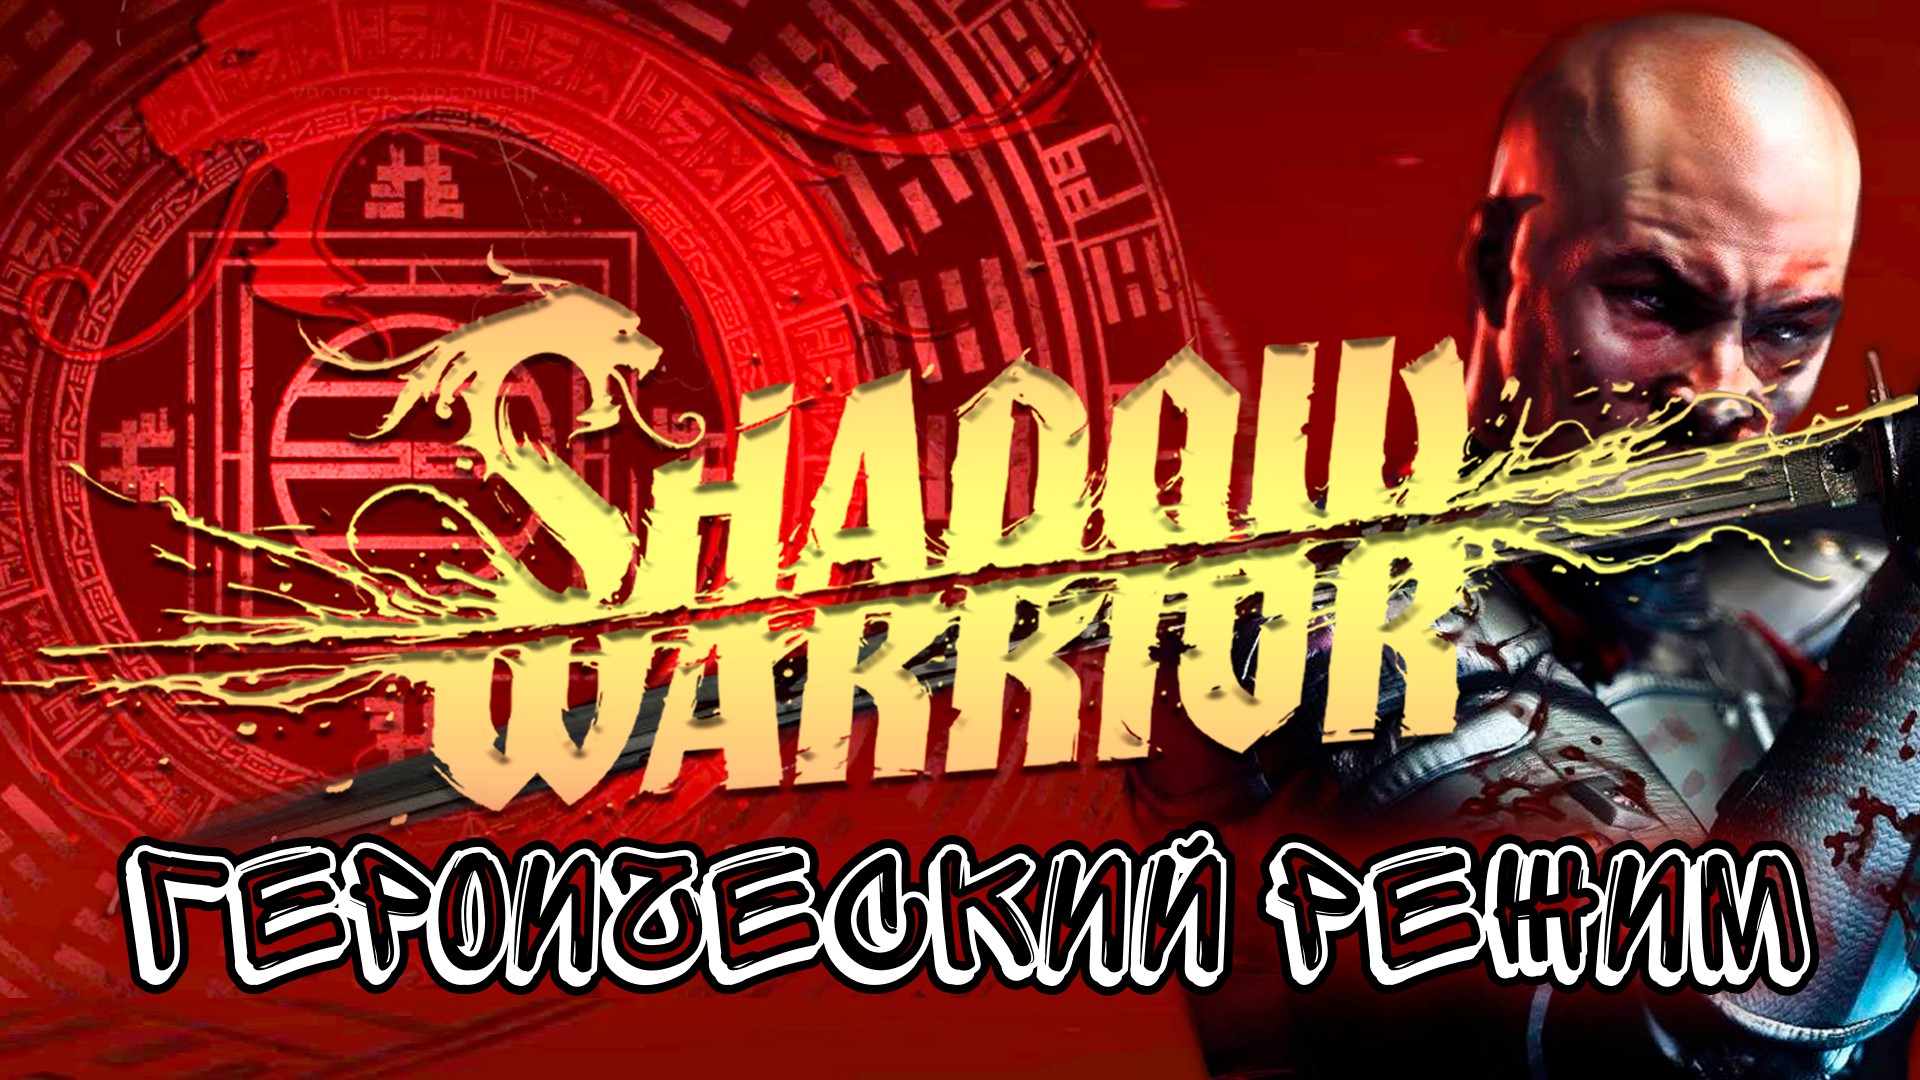 Shadow Warrior 2013 Героический режим